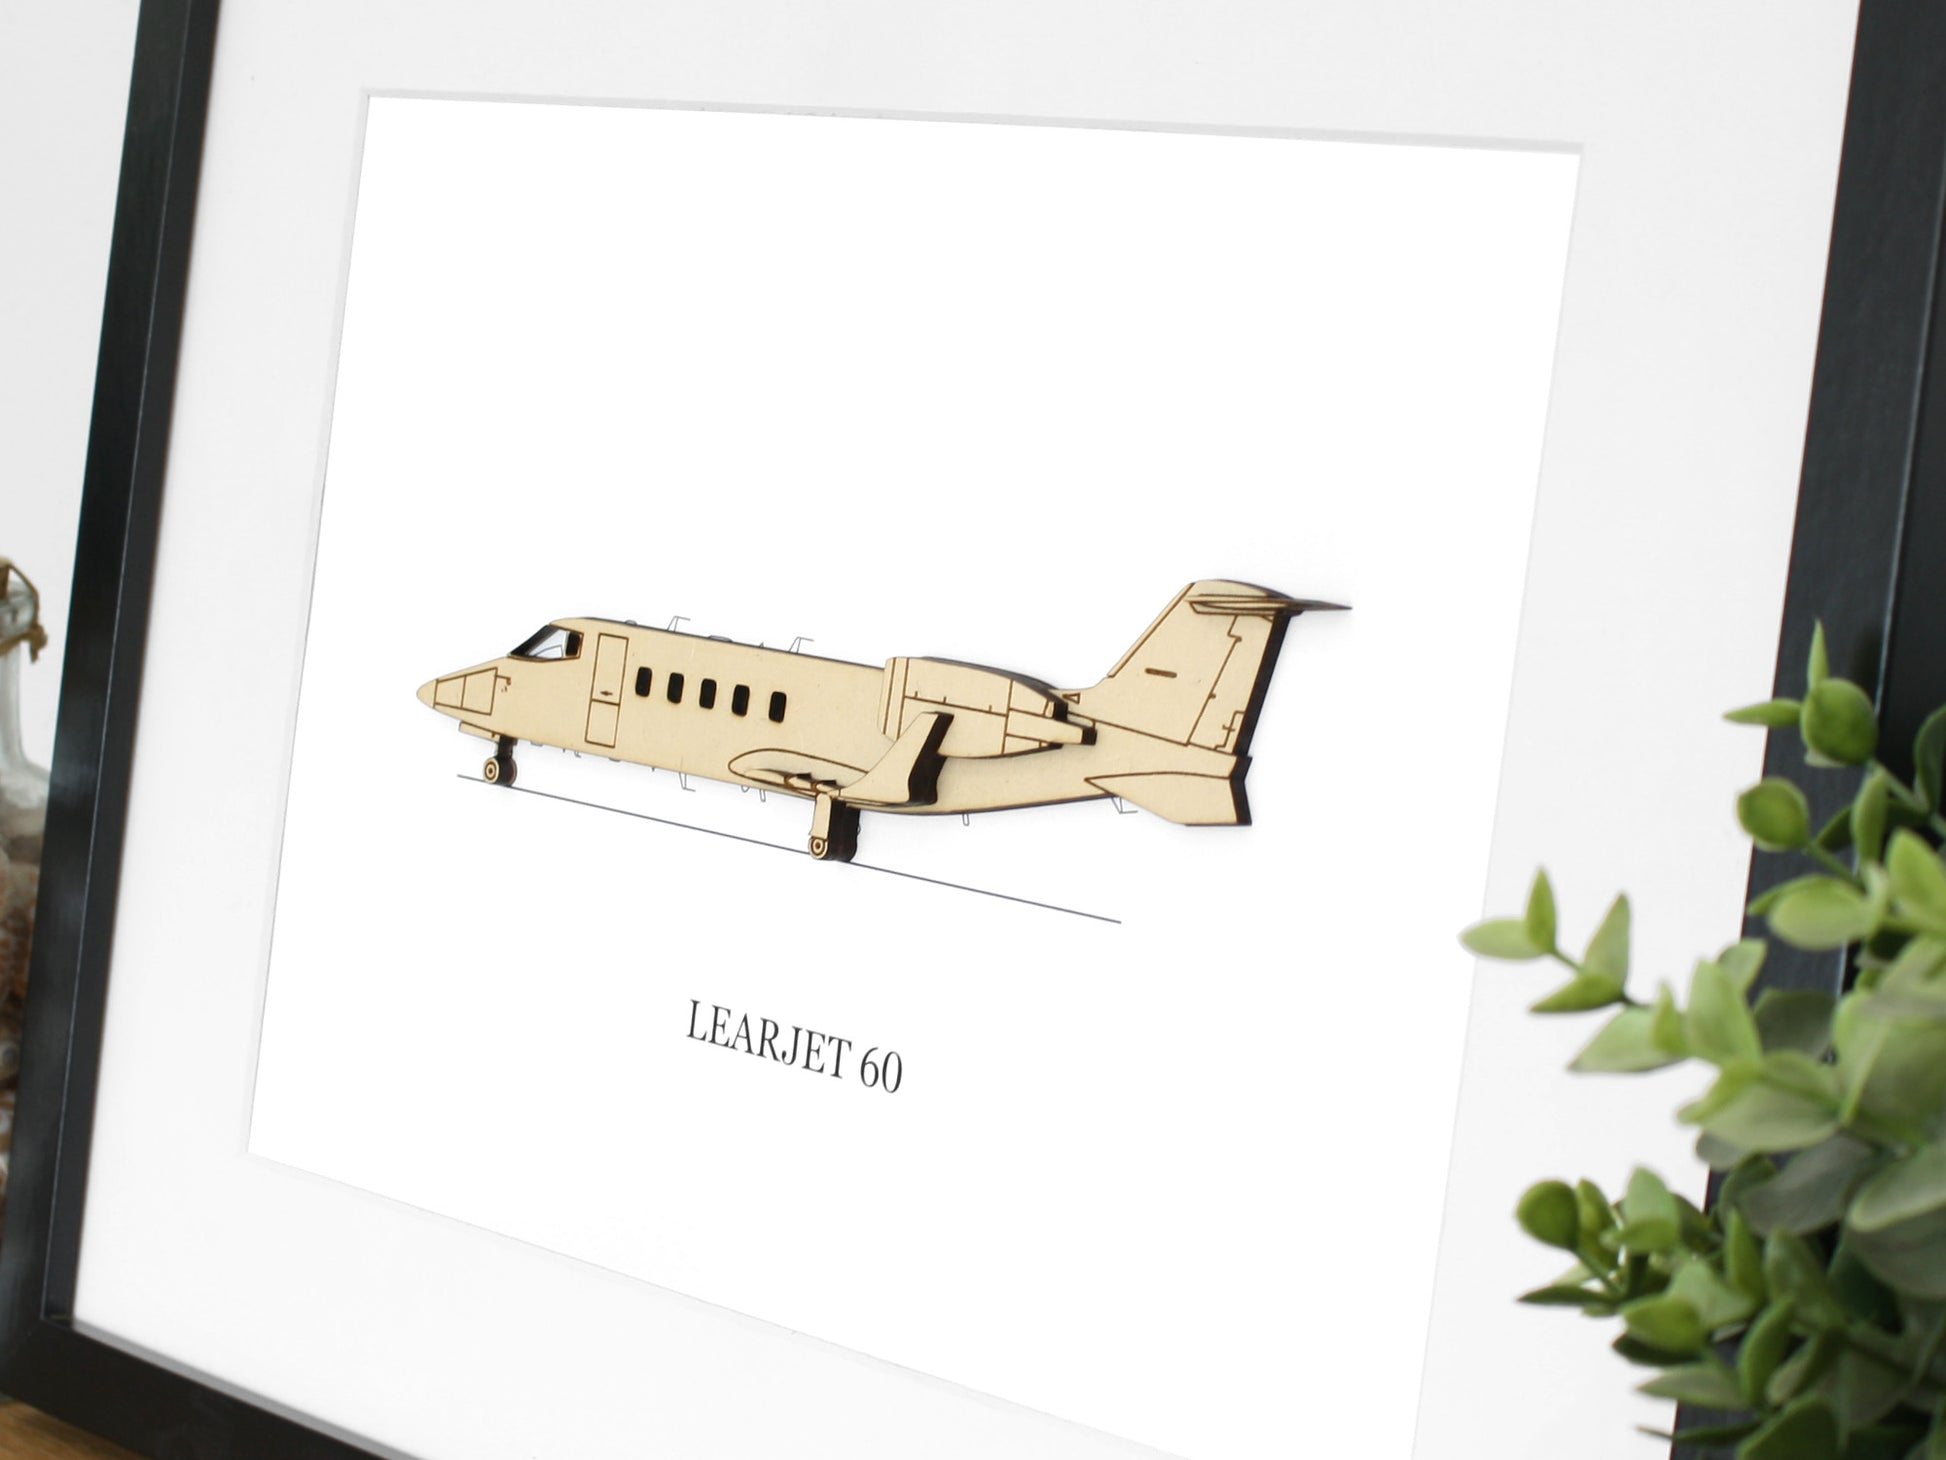 Learjet 60 pilot gifts